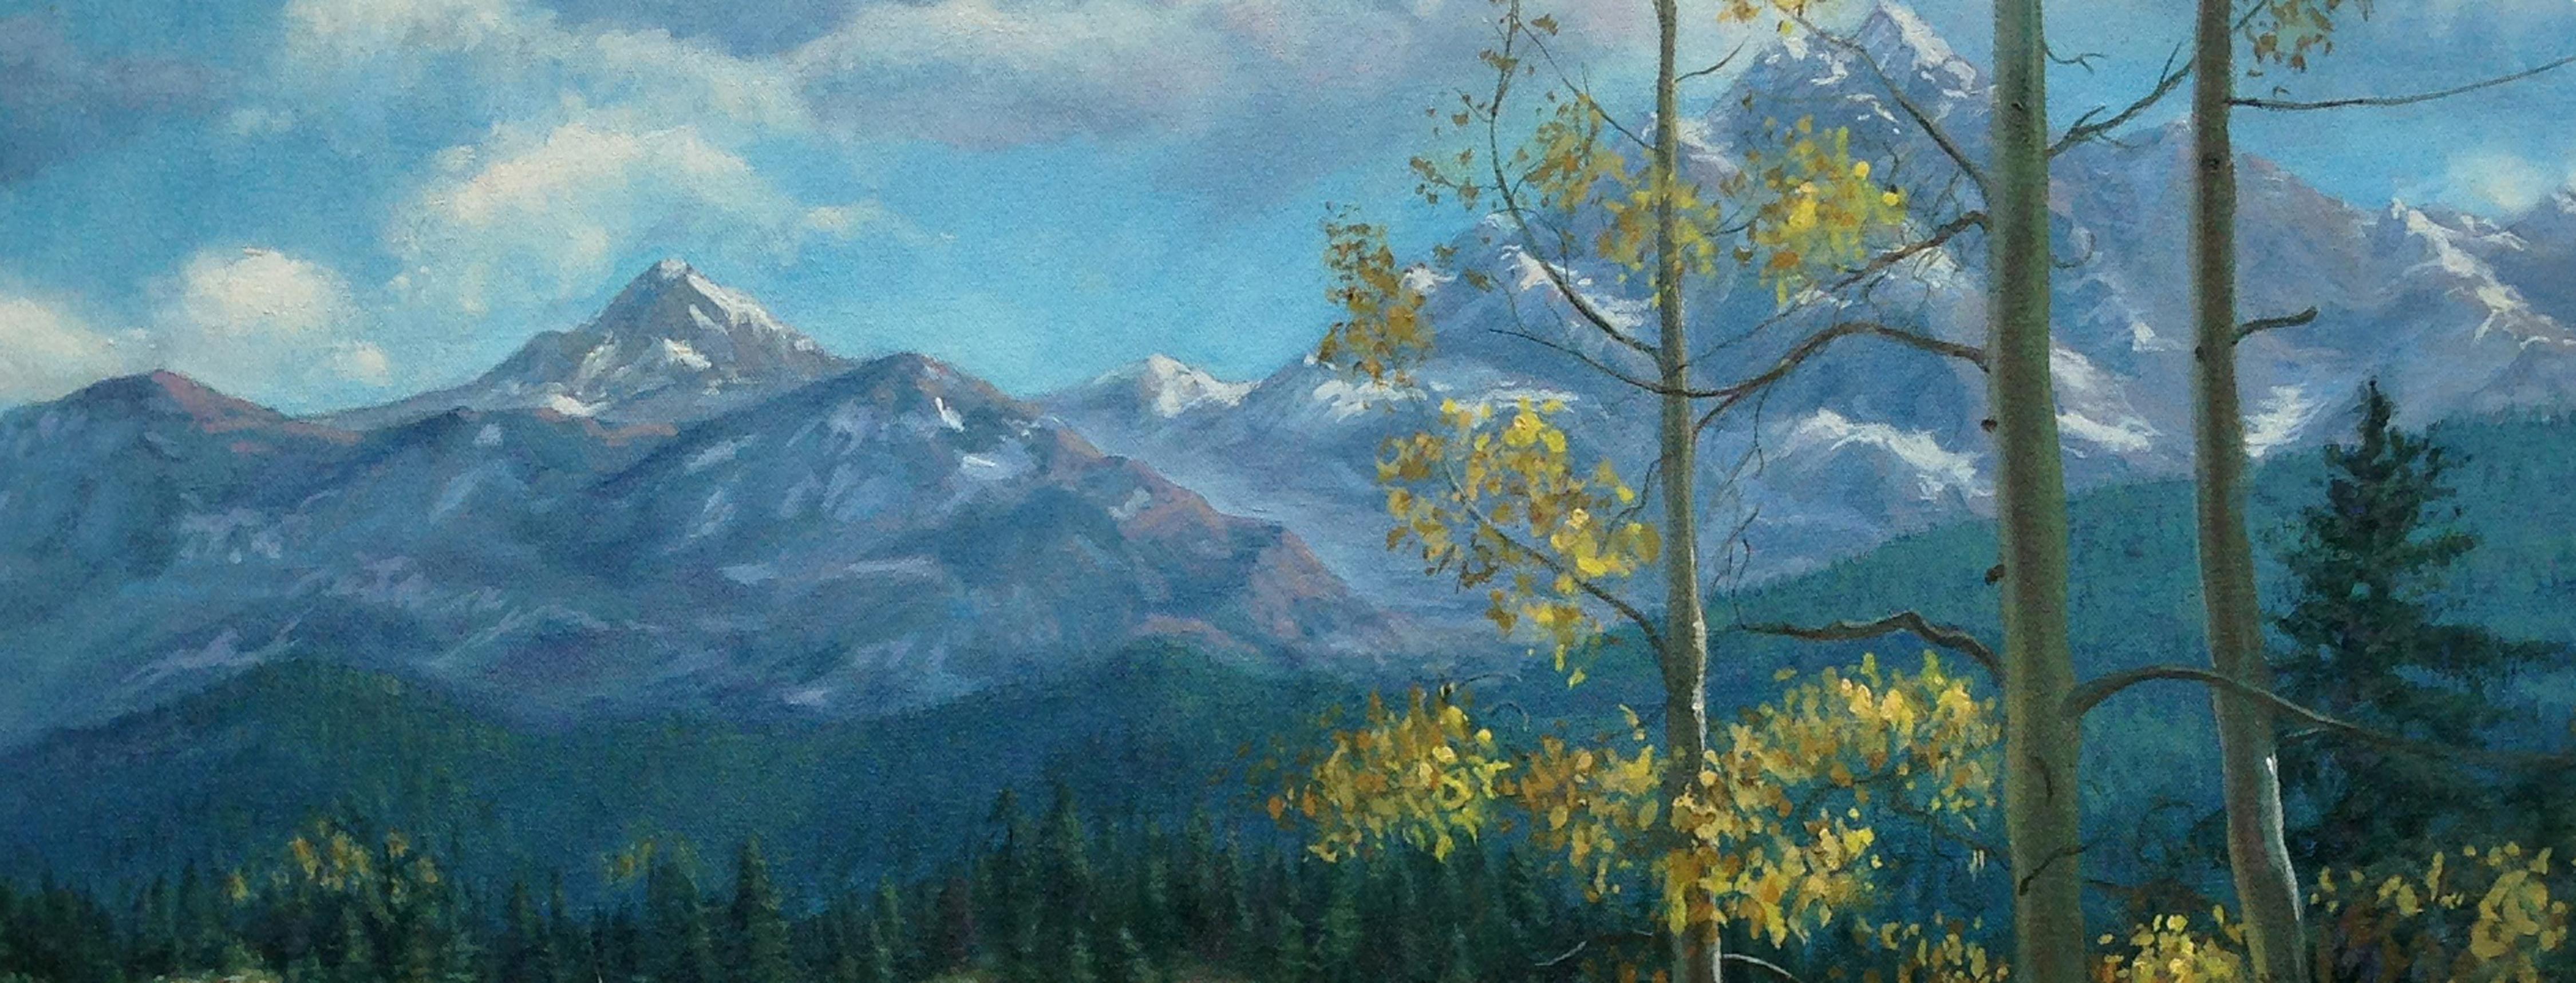 Paysage d'automne des montagnes de la Sierra - Réalisme Painting par W. R. Rolls